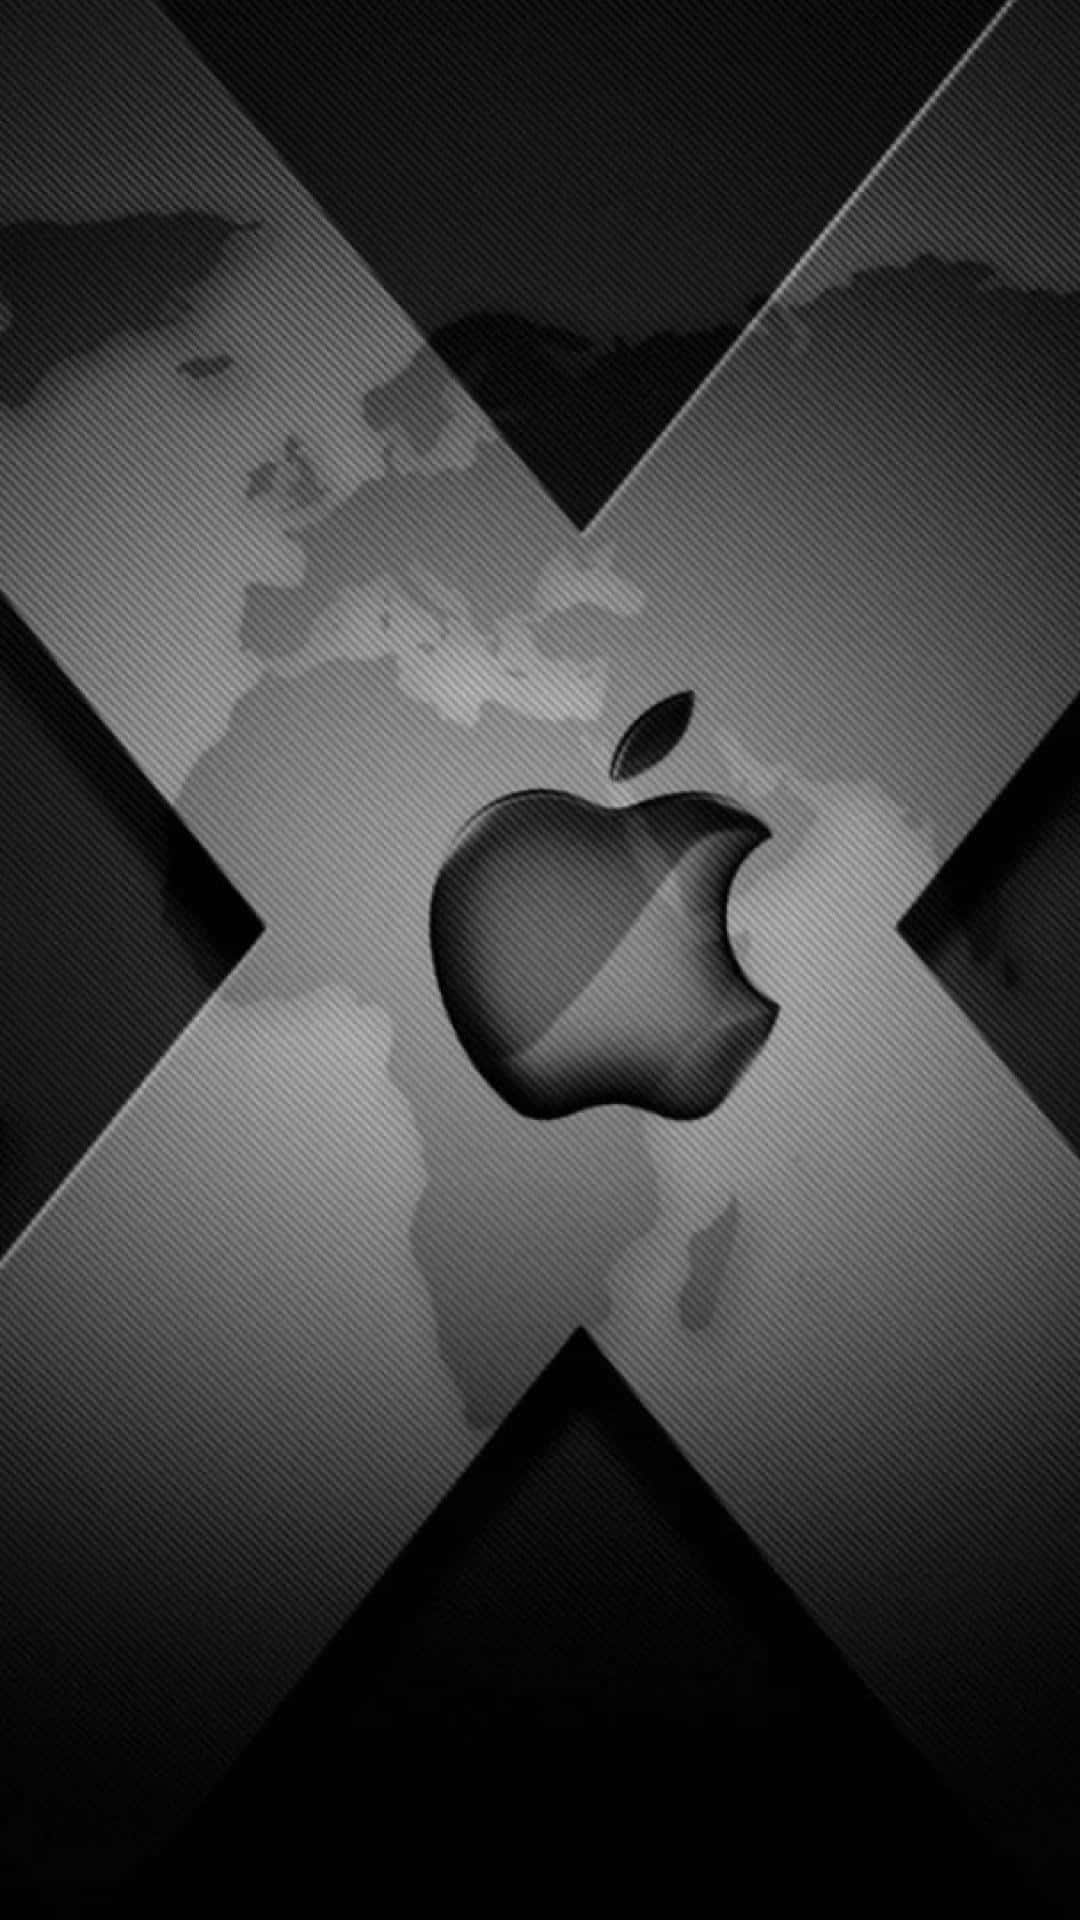 Oicônico Logo Da Apple No Iphone X. Papel de Parede